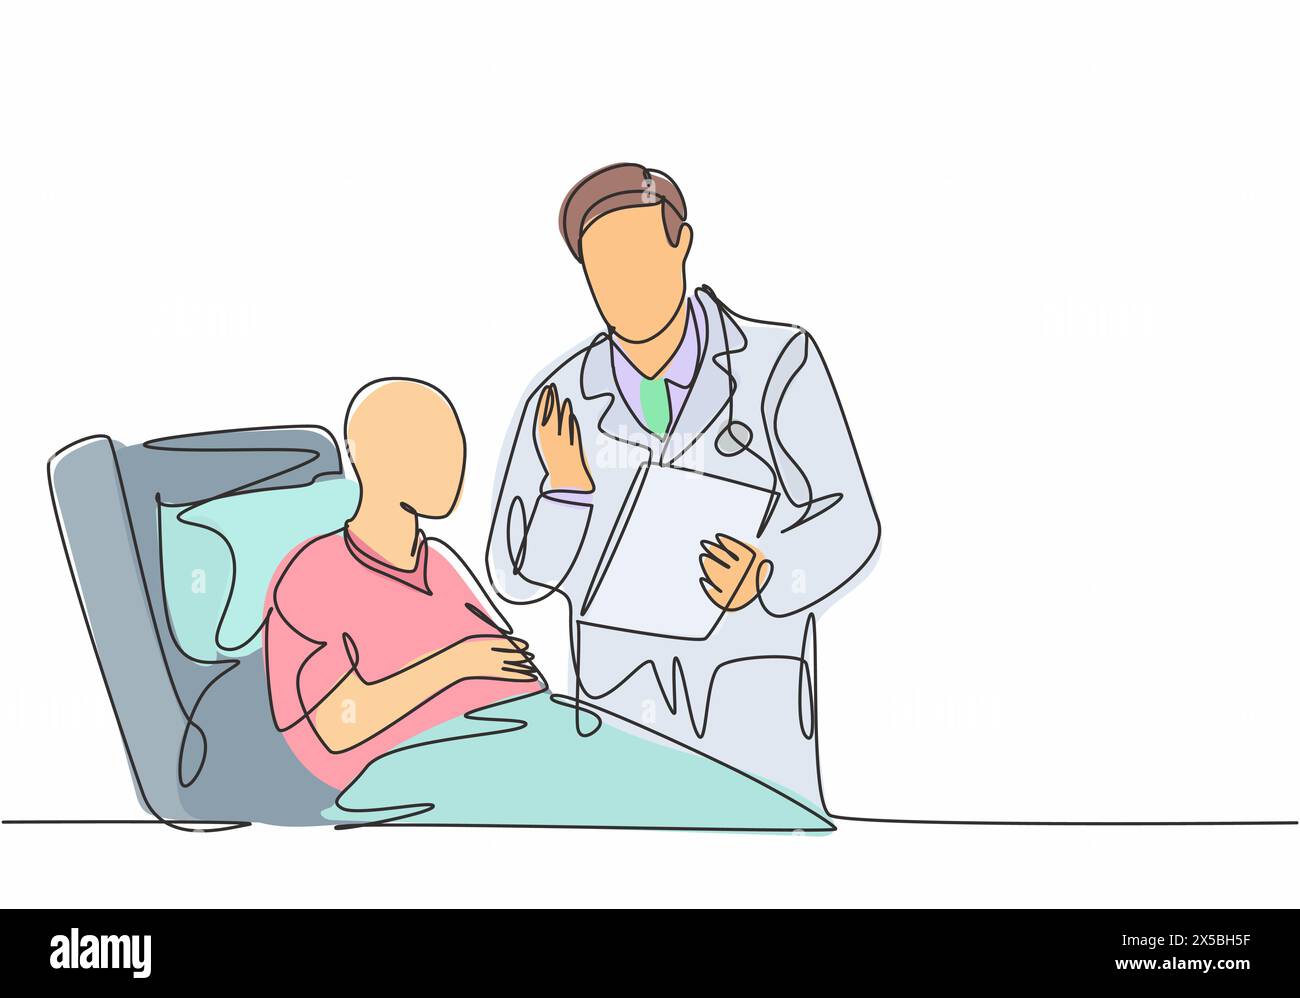 Un disegno unico del giovane medico maschile discutere progressi positivi per la salute con il vecchio paziente cancro che si stendono sul letto dell'ospedale. Concetto di assistenza medica Illustrazione Vettoriale